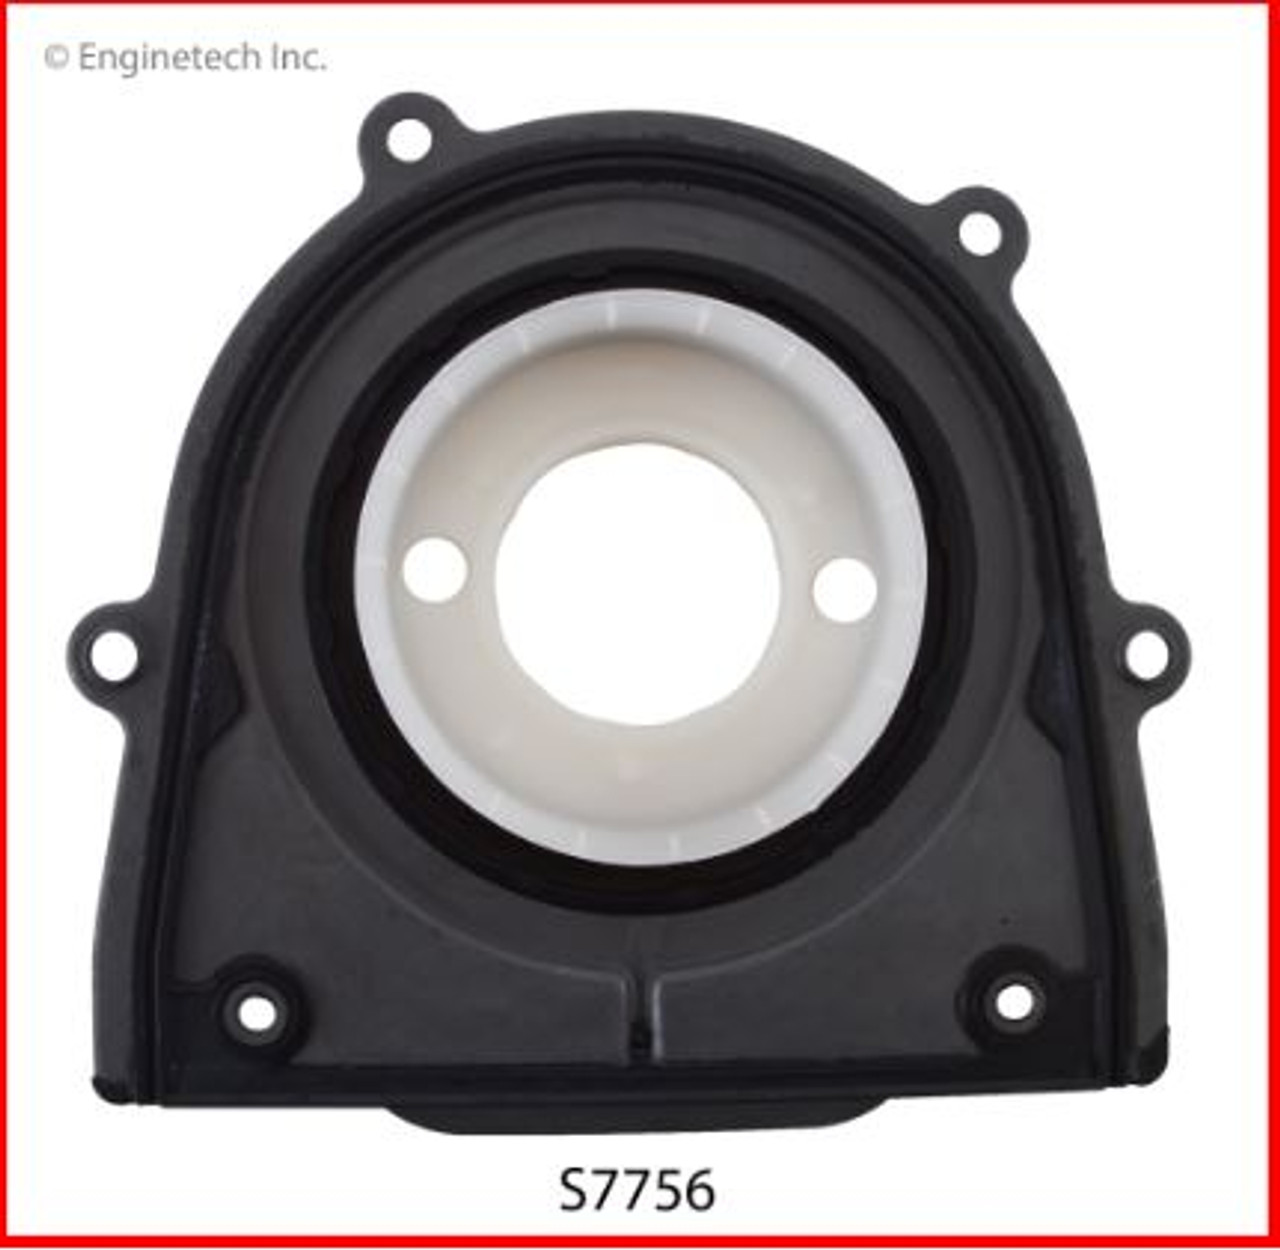 Crankshaft Seal - 2009 Mazda 3 2.0L (S7756.I88)